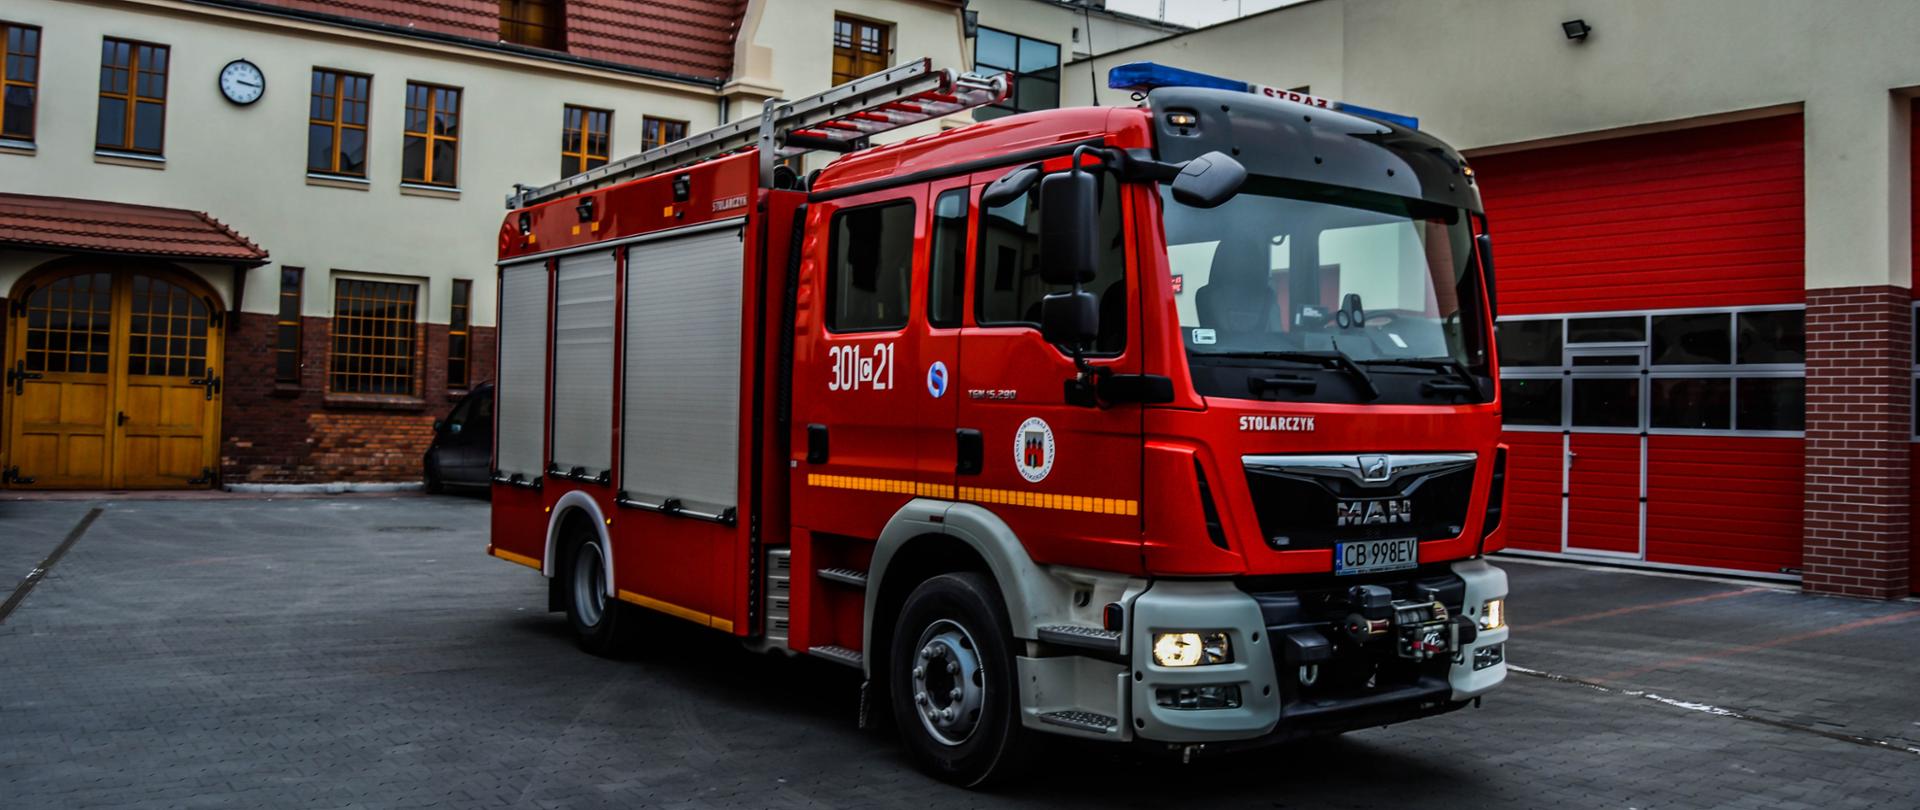 Samochód strażacki ciężarowy ratowniczo-gaśniczy Jednostki Ratowniczo-Gaśniczej nr 1 w Bydgoszczy, podwozie marki Man, w tle budynek jednostki.